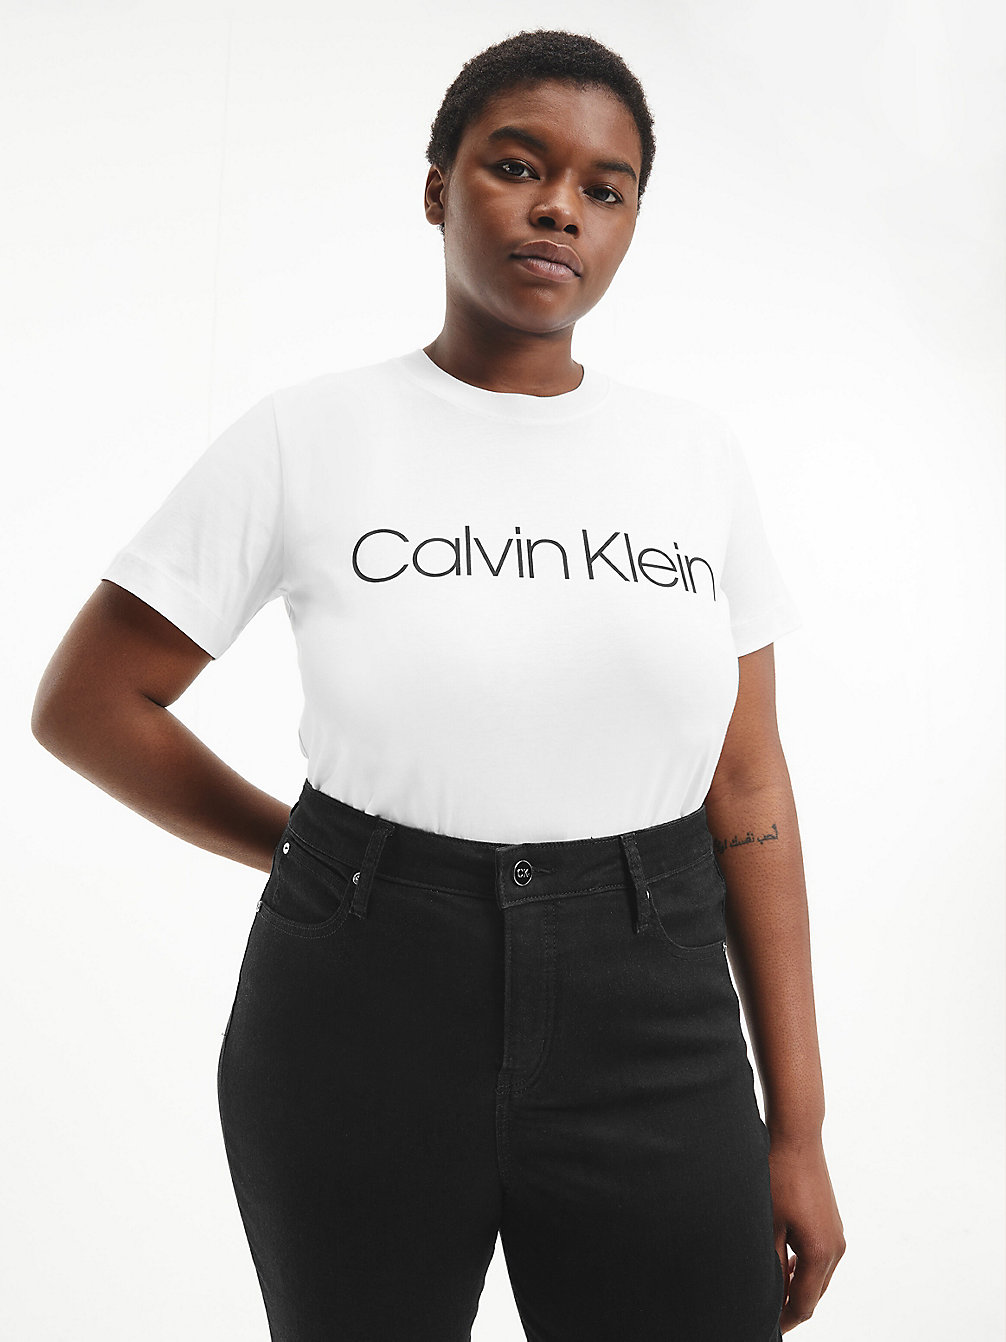 BRIGHT WHITE > T-Shirt Aus Bio-Baumwolle In Großen Größen > undefined Damen - Calvin Klein